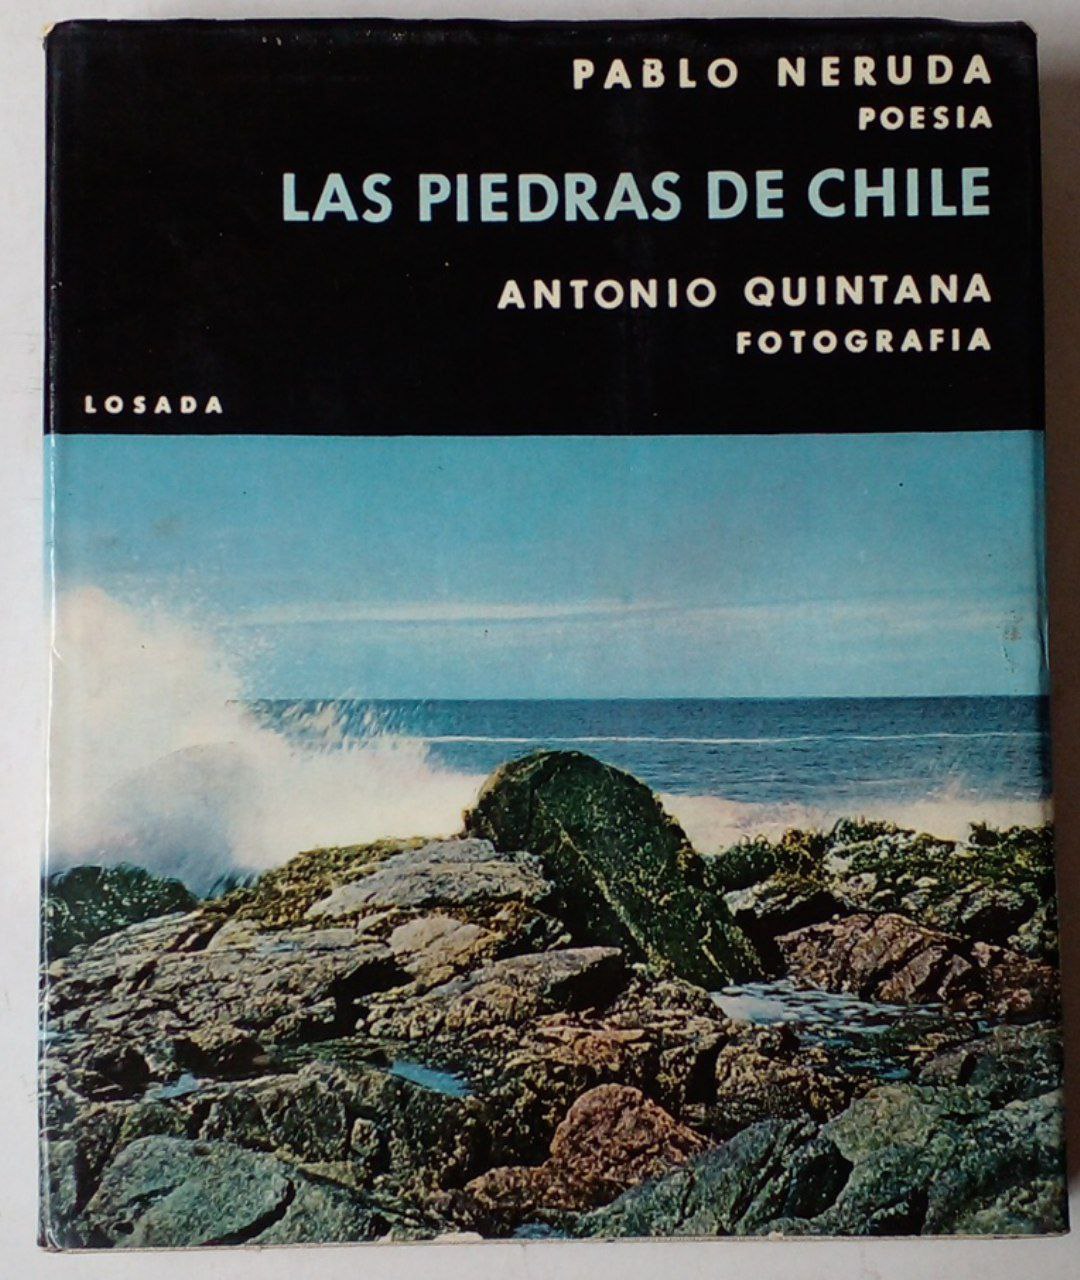 Pablo Neruda - Antonio Quintana. Las Piedras de Chile.